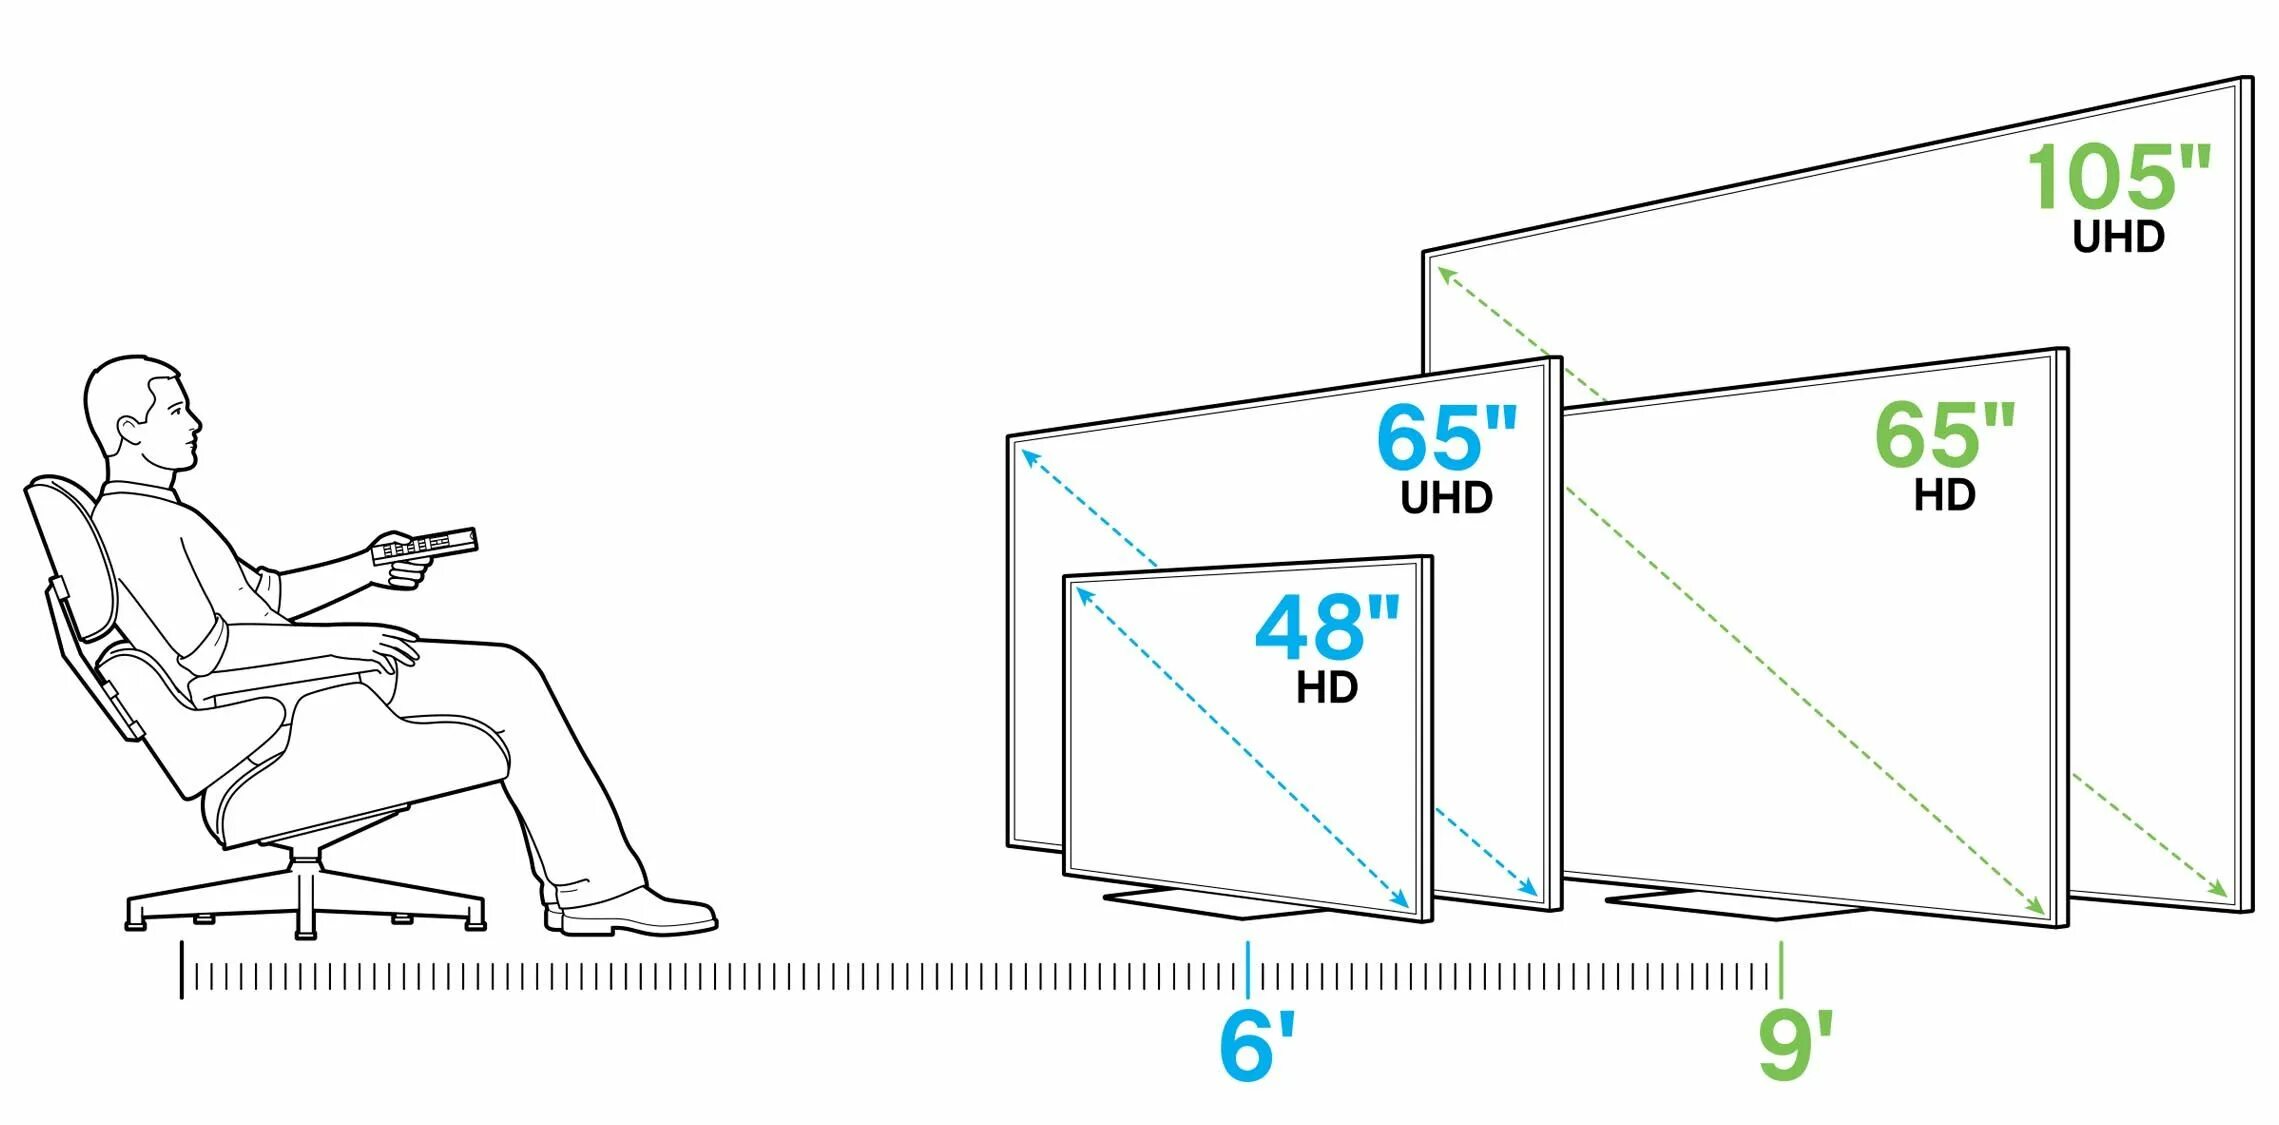 Как правильно выбрать диагональ телевизора расстояние до экрана. Размеры телевизоров. Диагональ экрана телевизора. Размер диагонали телевизора.